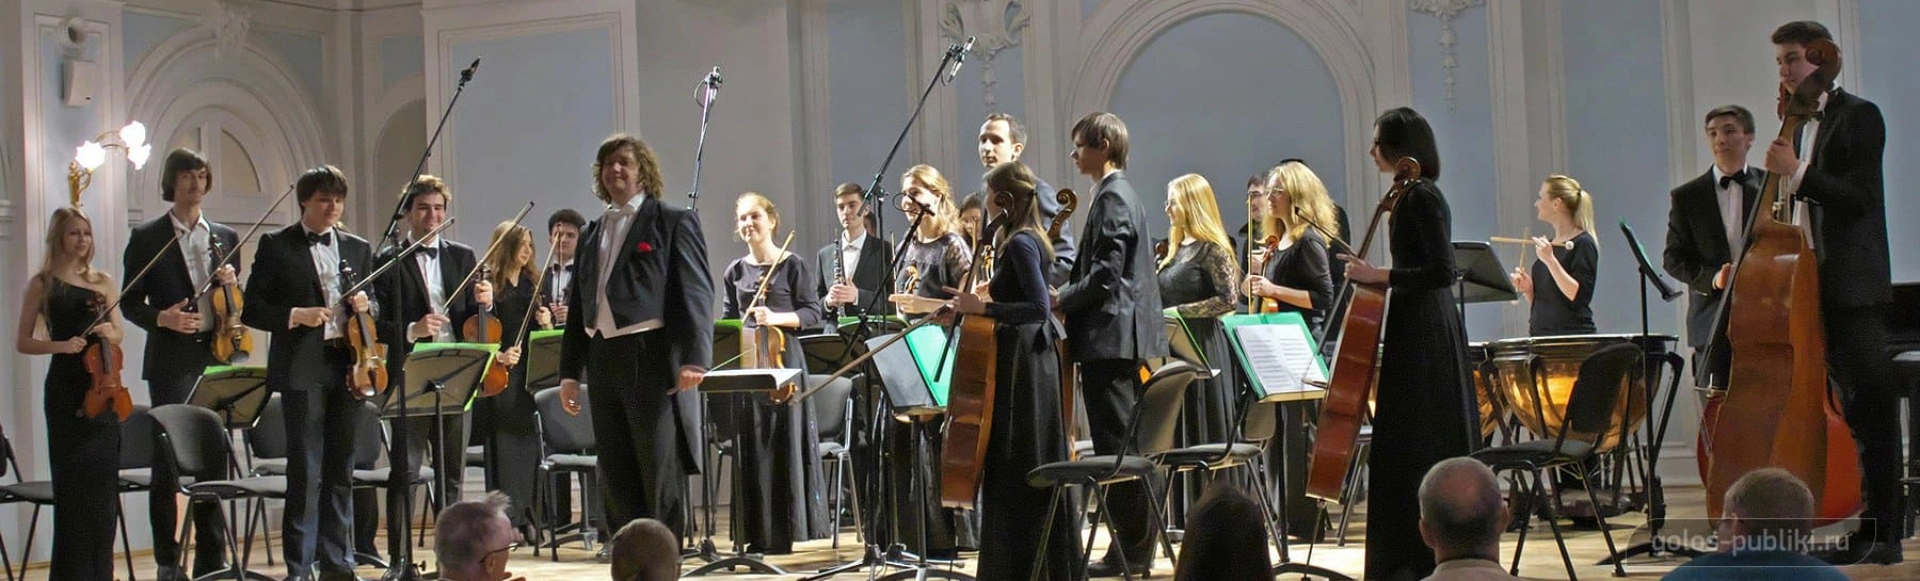 Камерный оркестр Московской консерватории. Юбилейный концерт